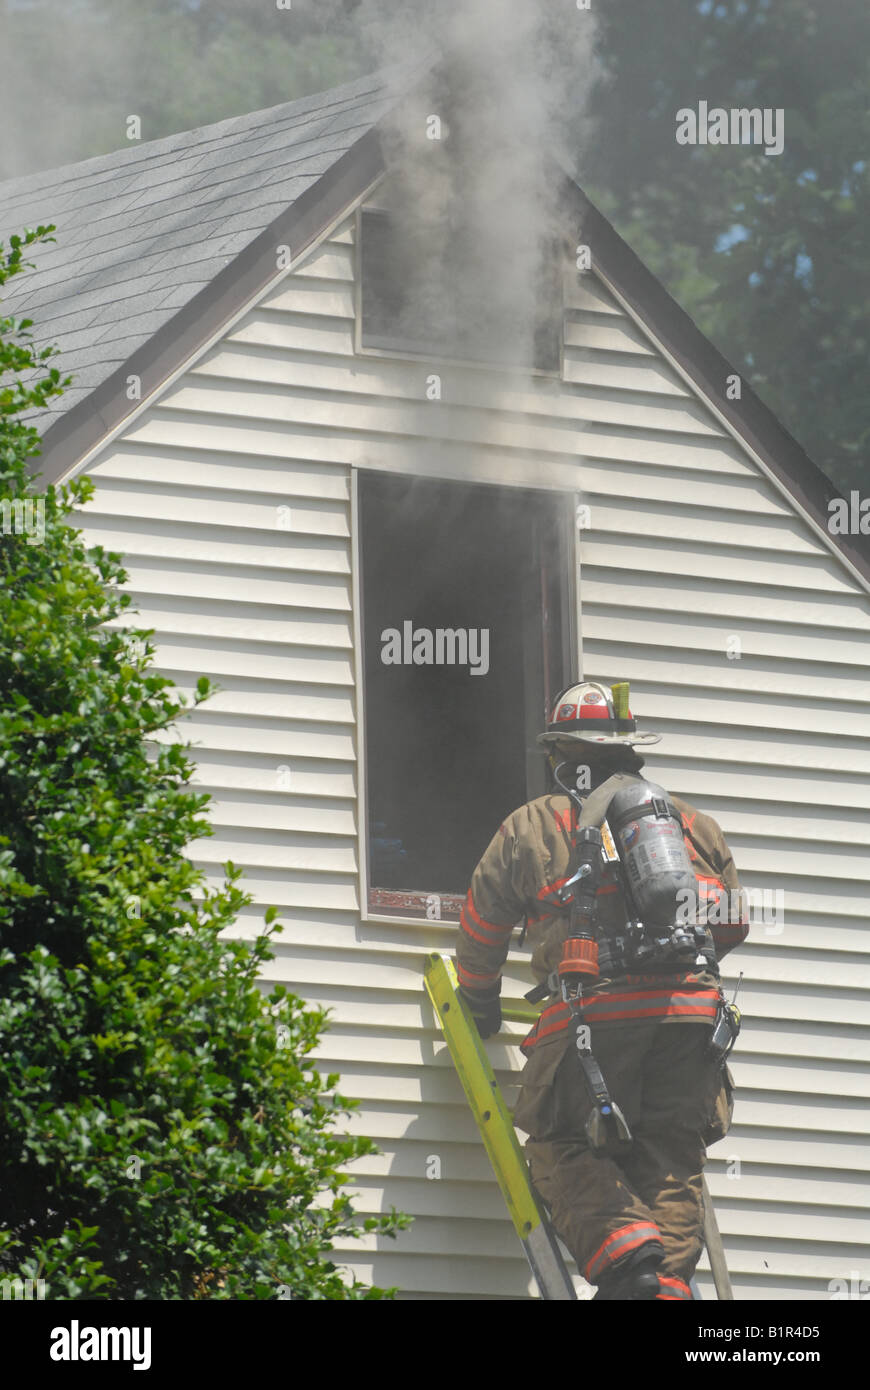 Feuerwehrmänner zu reagieren, um ein Haus Feuer in Maryland löschen Stockfoto